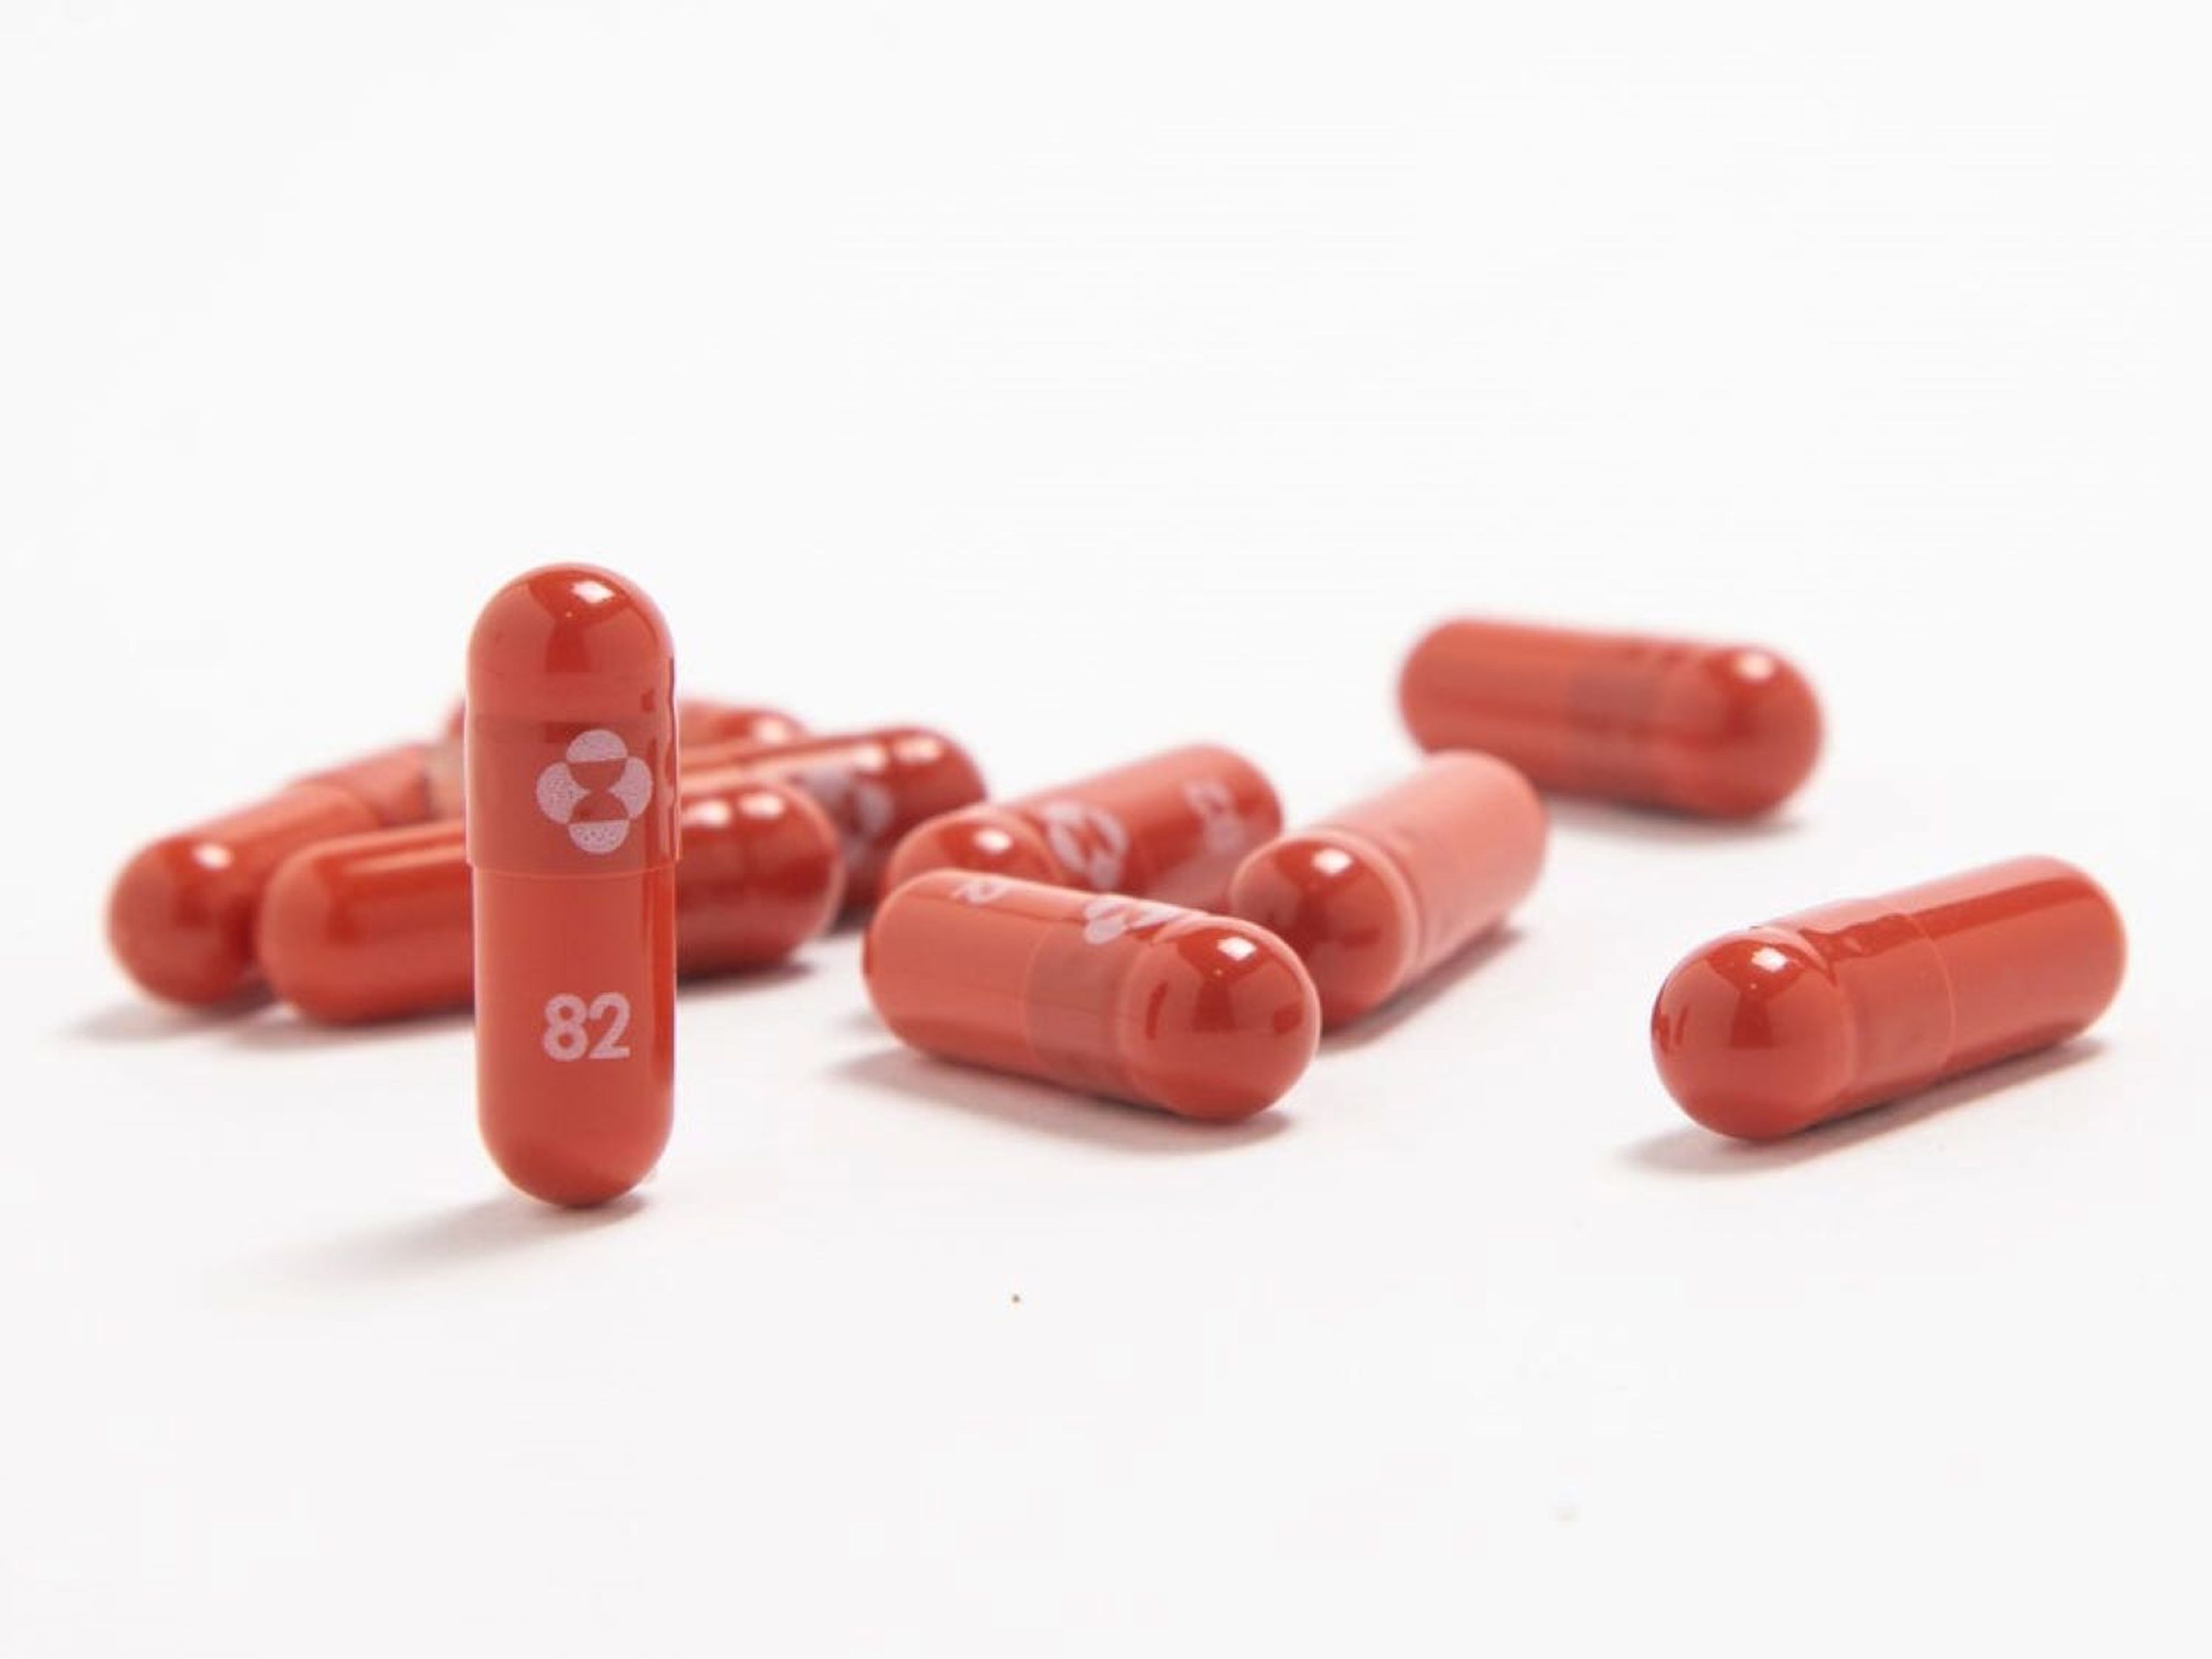 Merck pedirá a los reguladores que autoricen la primera píldora antiviral contra el COVID-19, después de que un ensayo muestre que reduce a la mitad el riesgo de hospitalización o muerte